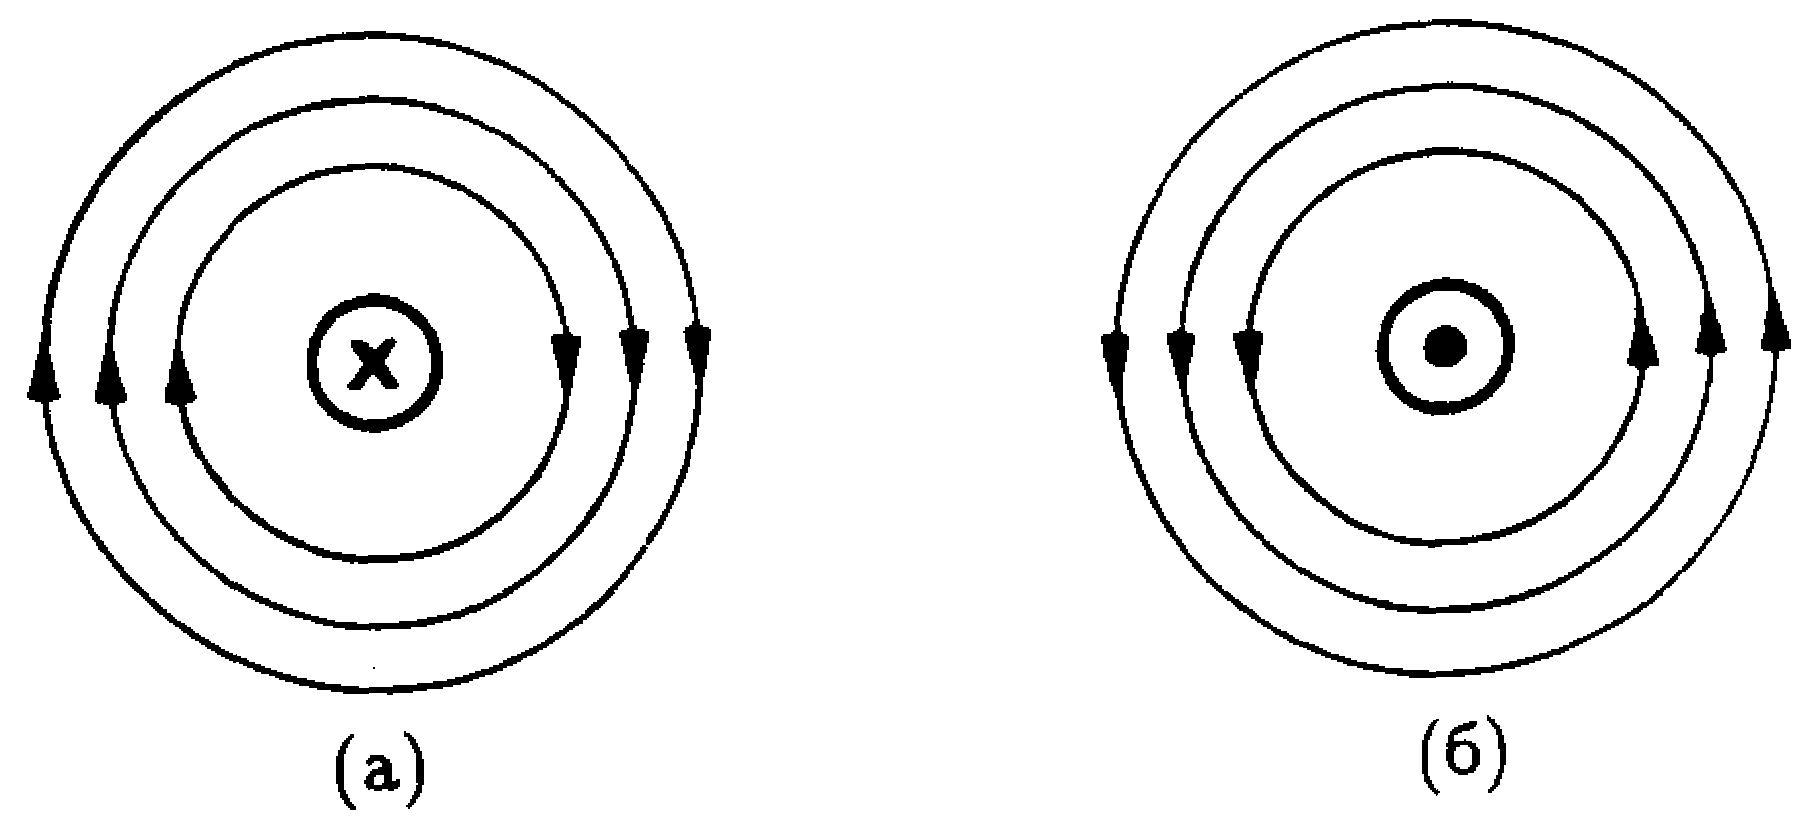 Линии магнитной индукции прямого проводника. Линии магнитного поля проводника с током. Направление магнитного поля вокруг проводника. Направление линий магнитного поля прямого проводника с током. Определите направление магнитного поля проводника с током